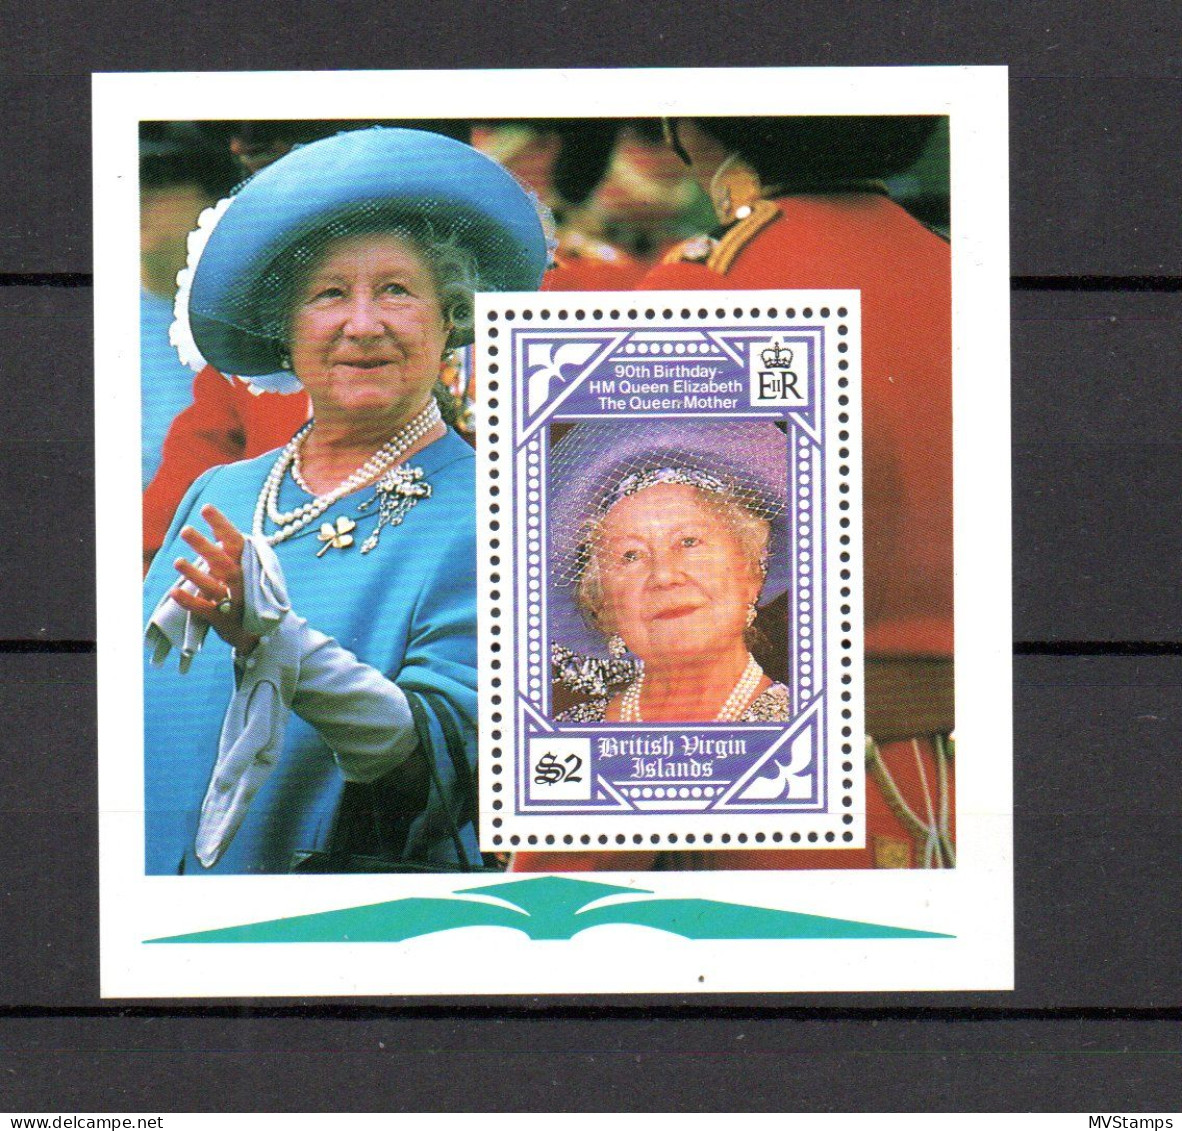 Virgin Islands 1990 Seet Queen Mother/Elizabeth Stamp (Michel Block 64) MNH - British Virgin Islands